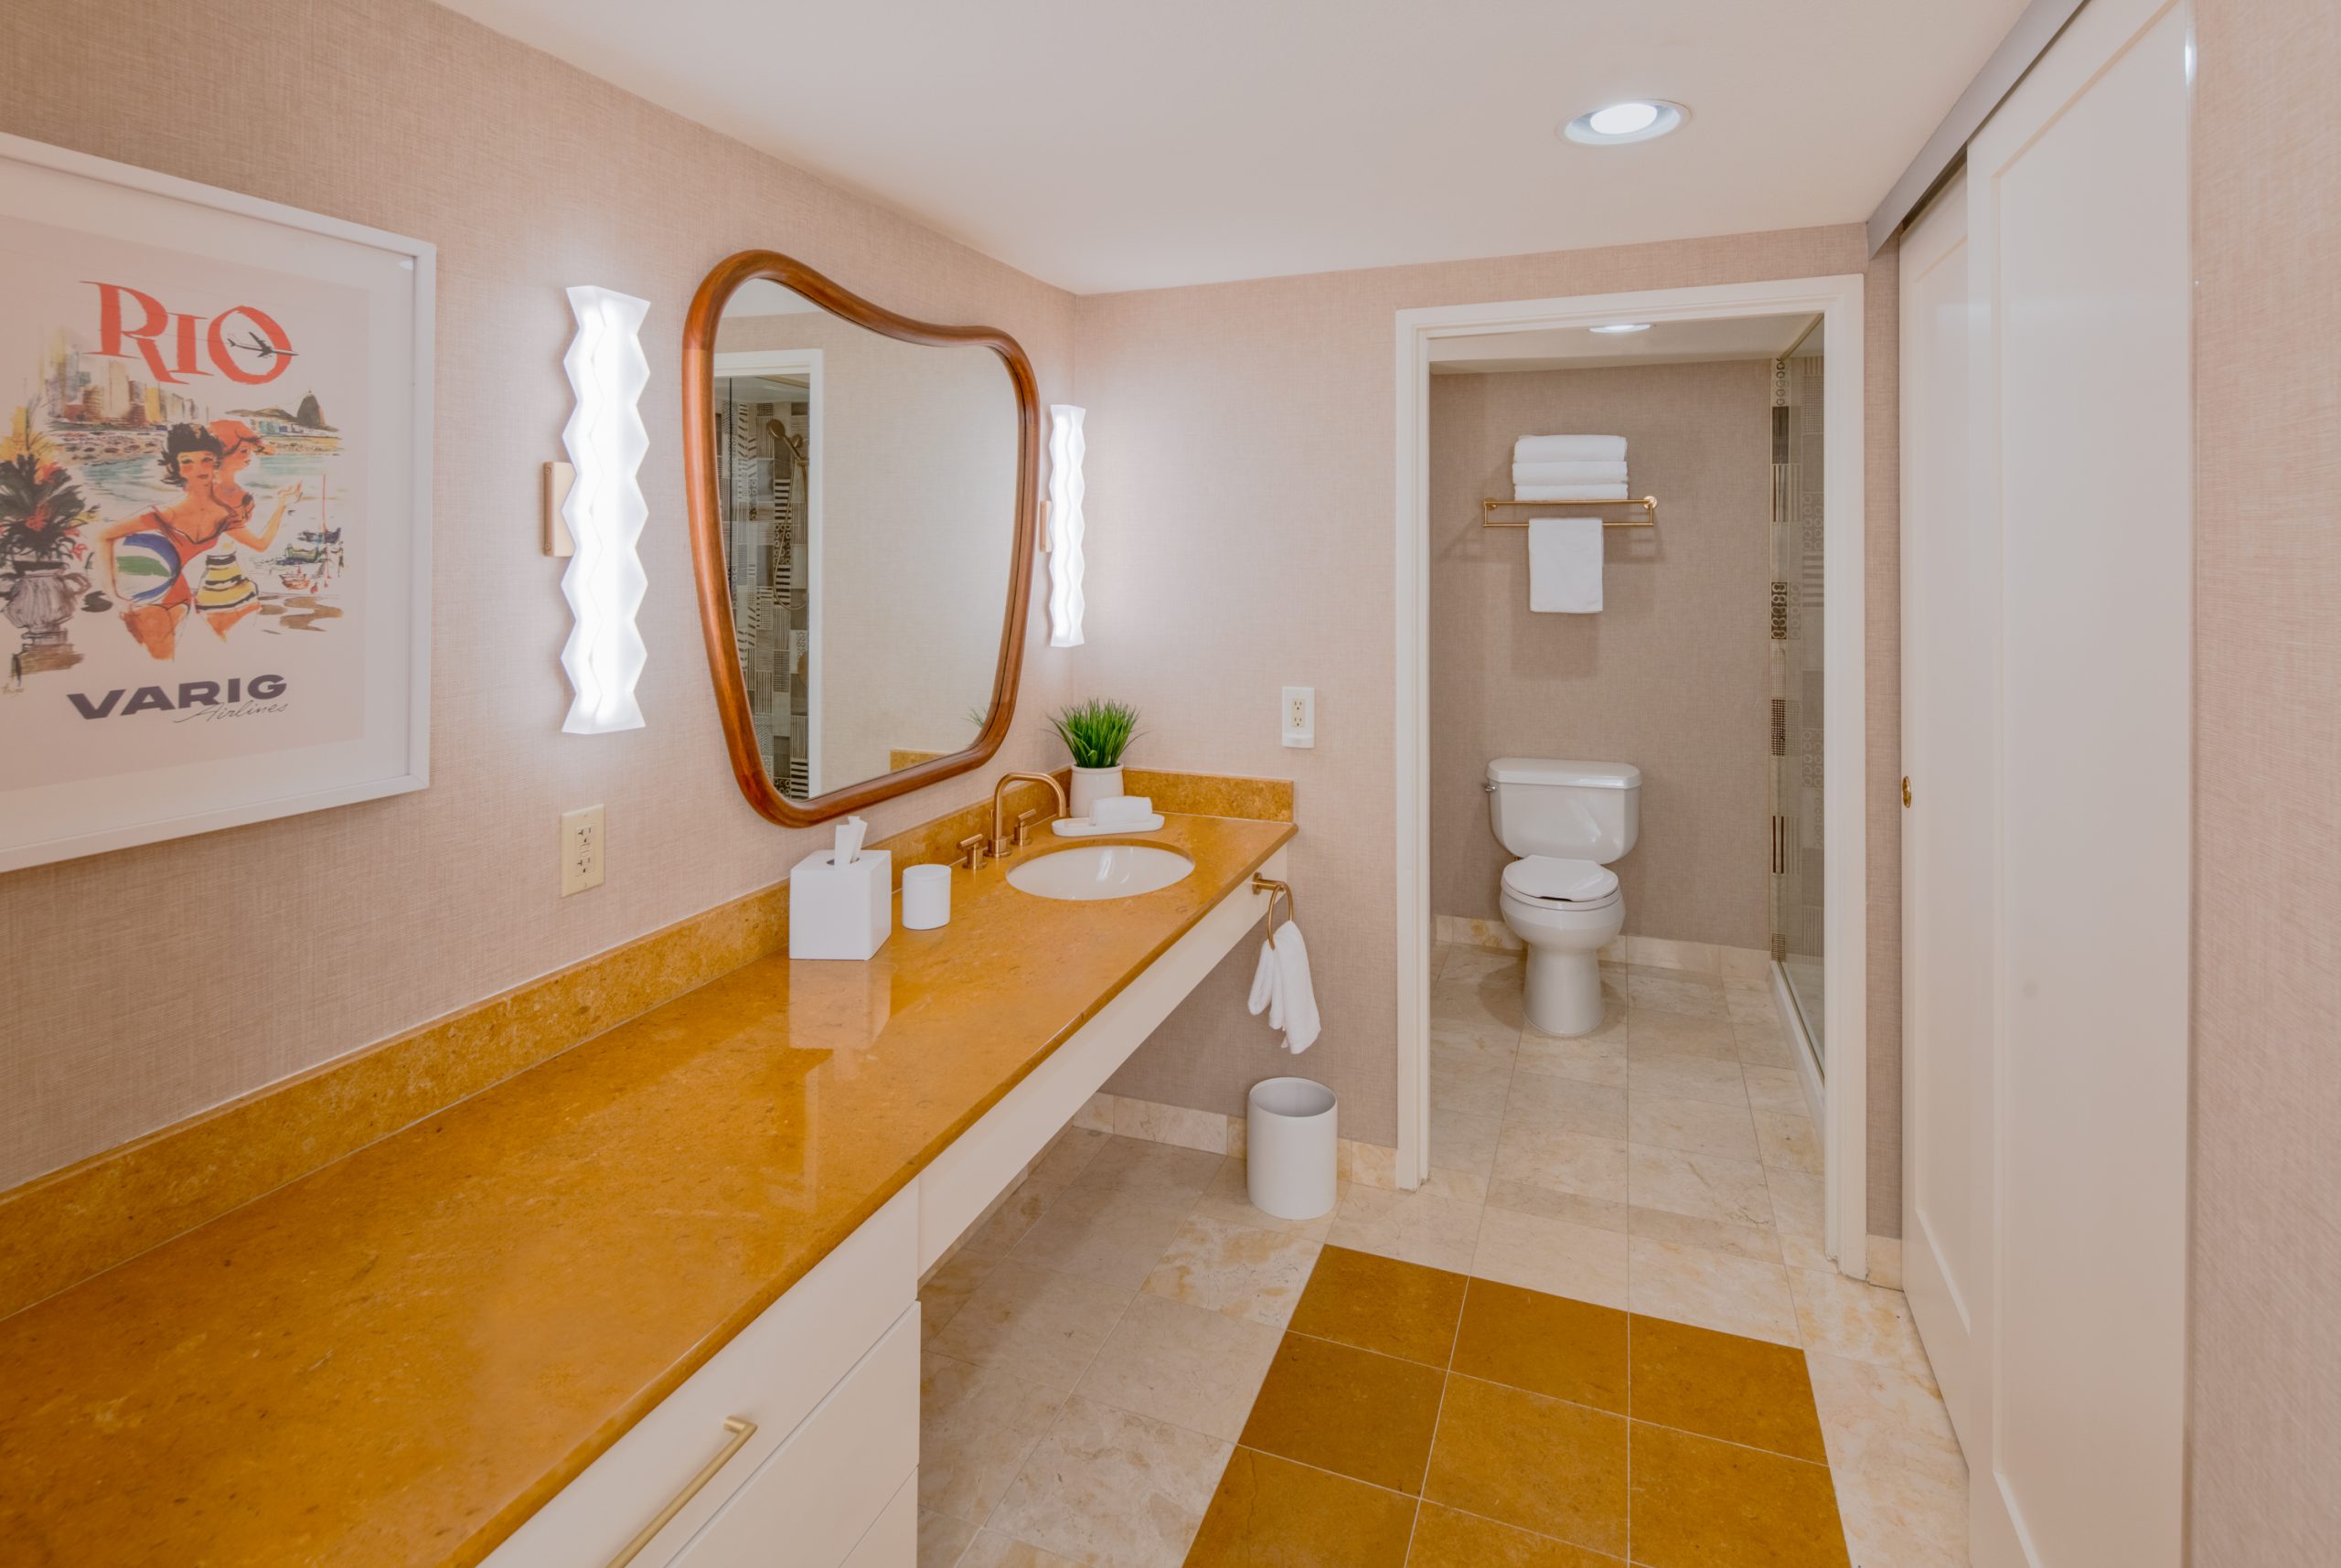 Deluxe Renovated Room Bathroom at Rio Hotel & Casino Las Vegas